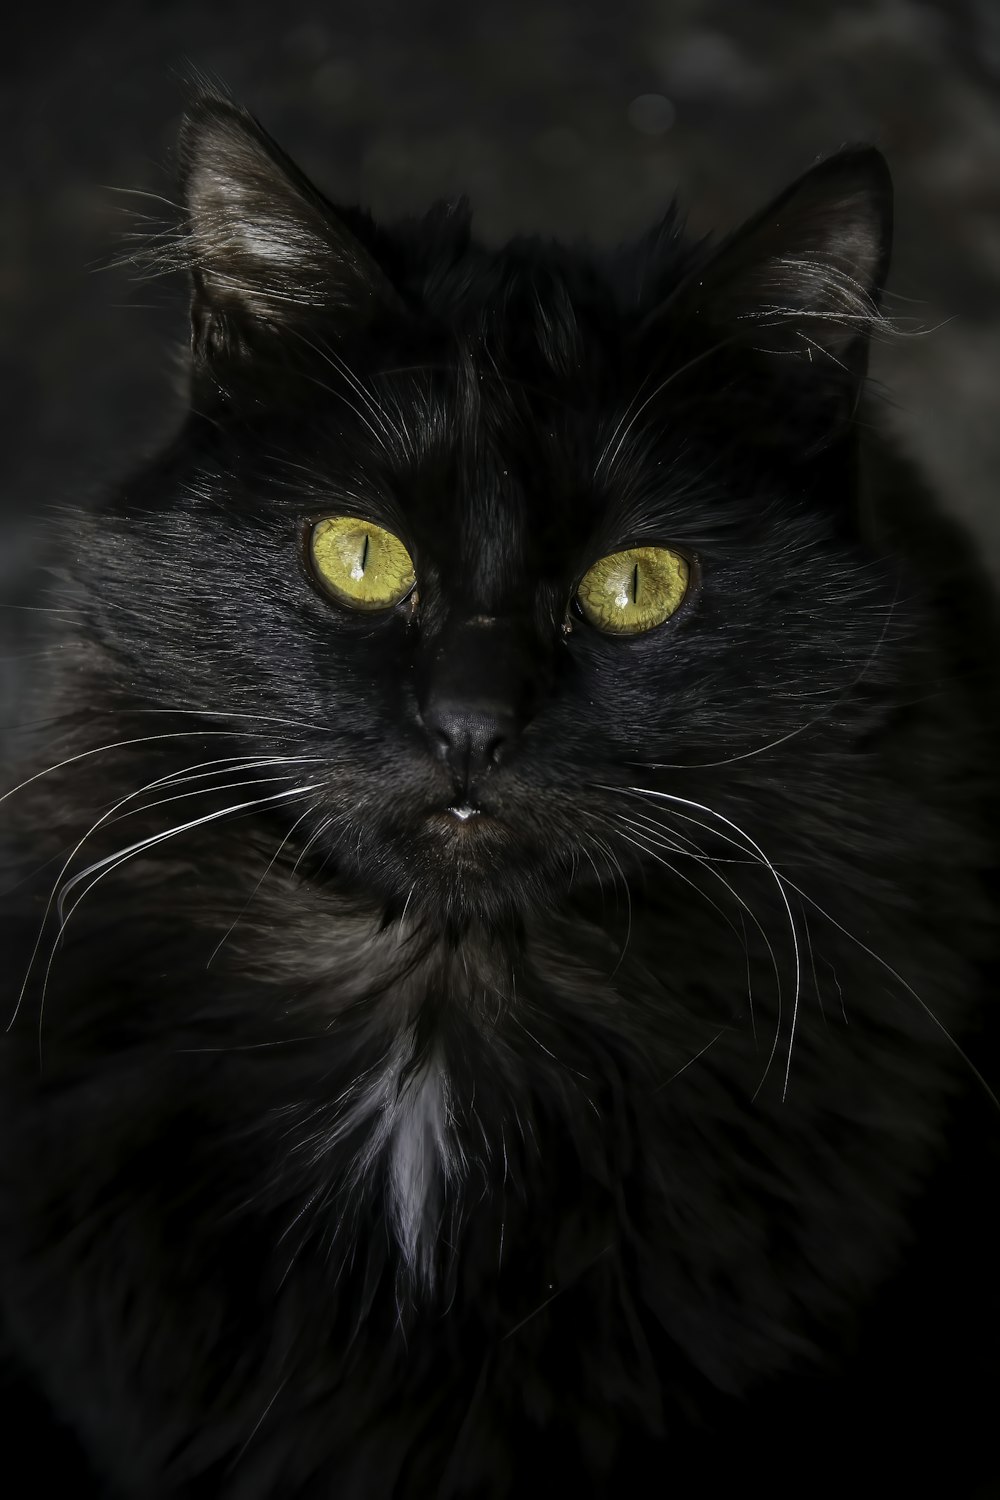 Un gatto nero con gli occhi gialli